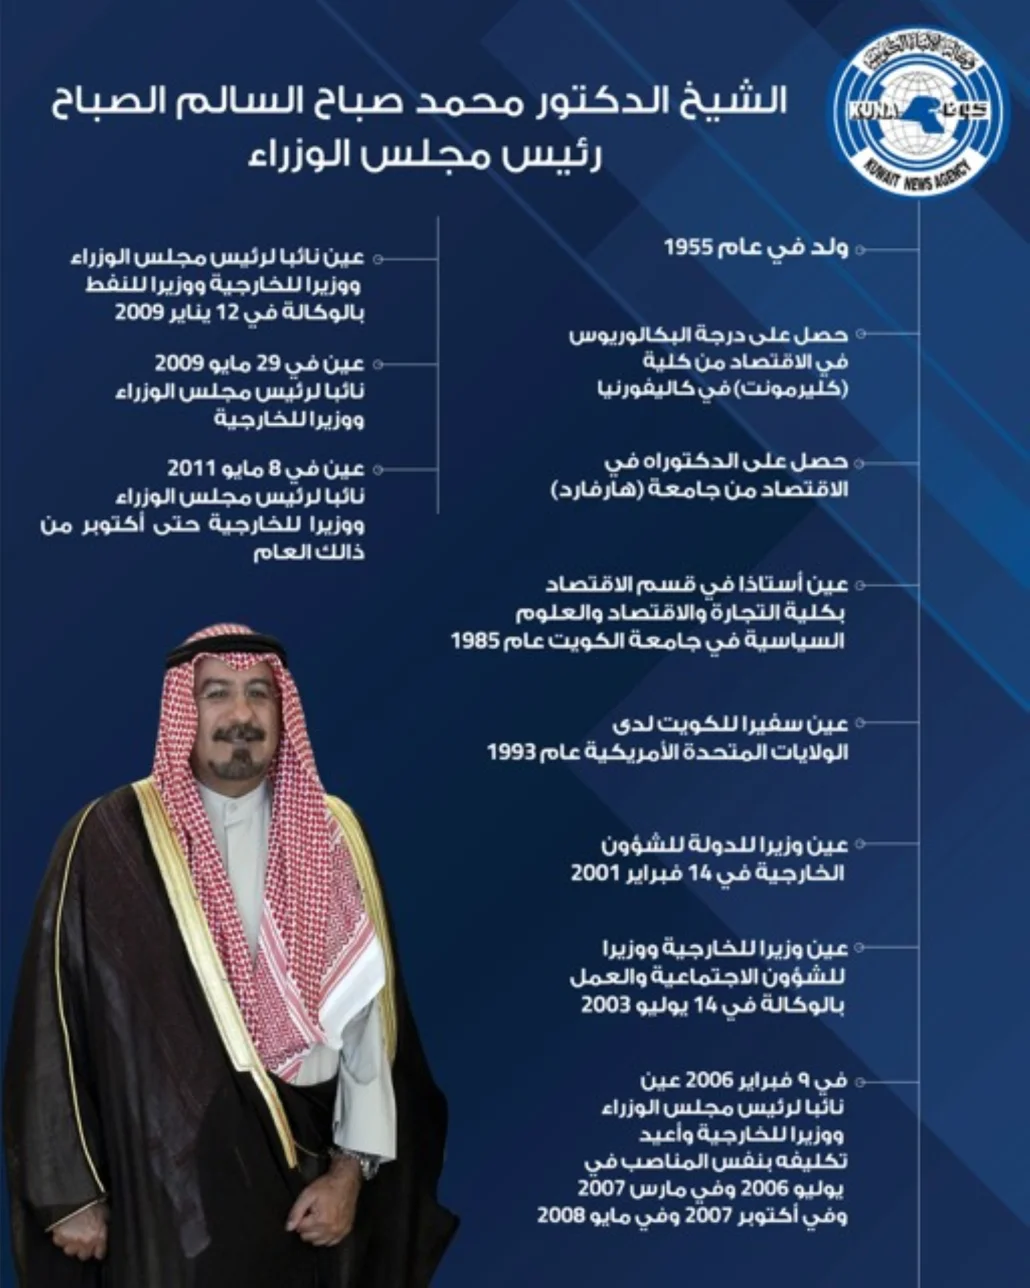 كلفه أمير الكويت بترشيح أعضاء الوزارة الجديدة